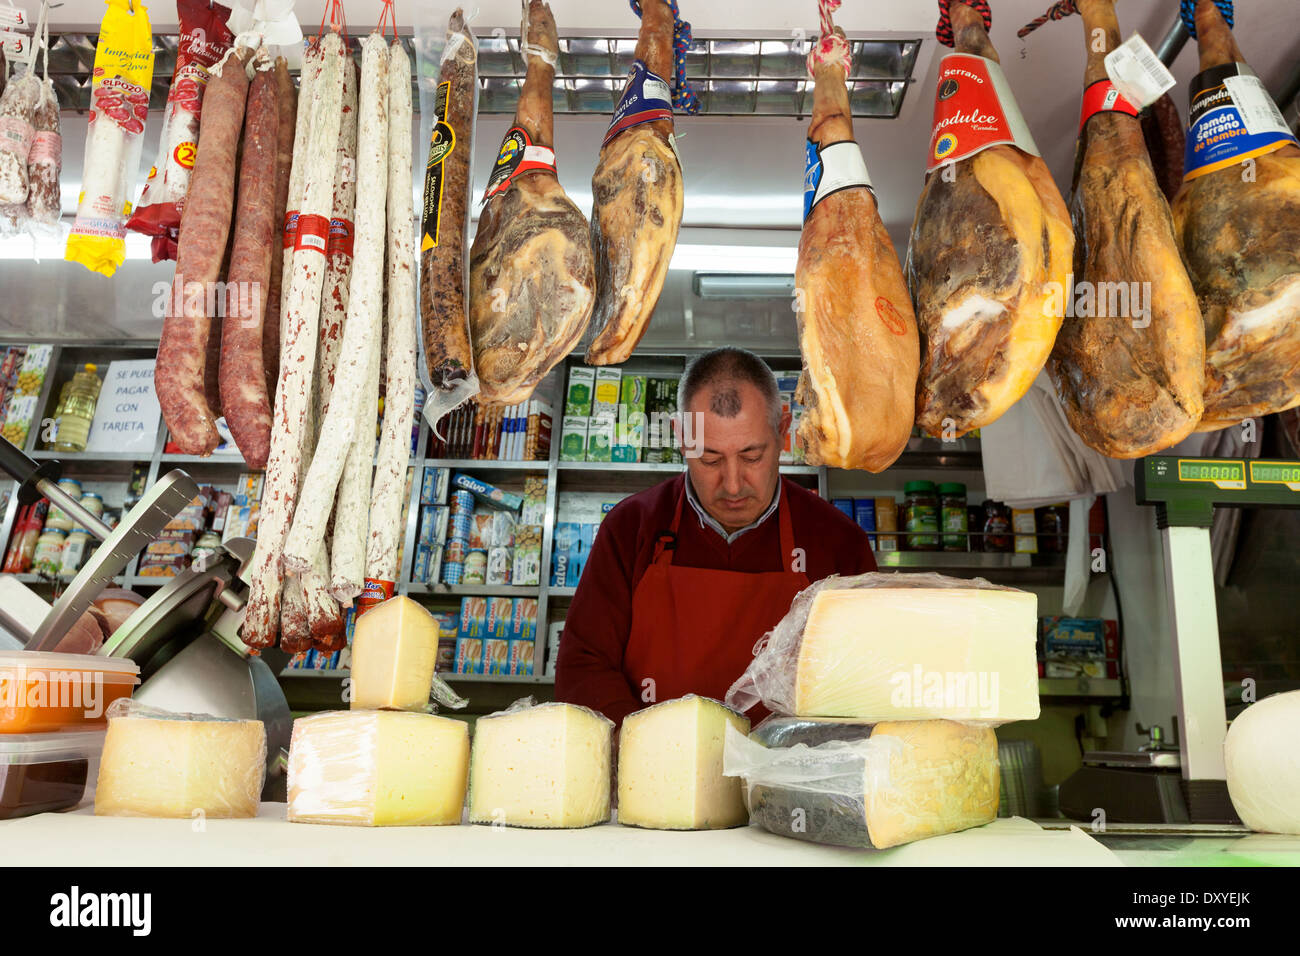 Marché alimentaire de l'Espagne ; un boucher vendant de la viande et du fromage dans son food, marché Turre, Almeria Andalousie Espagne Europe Banque D'Images